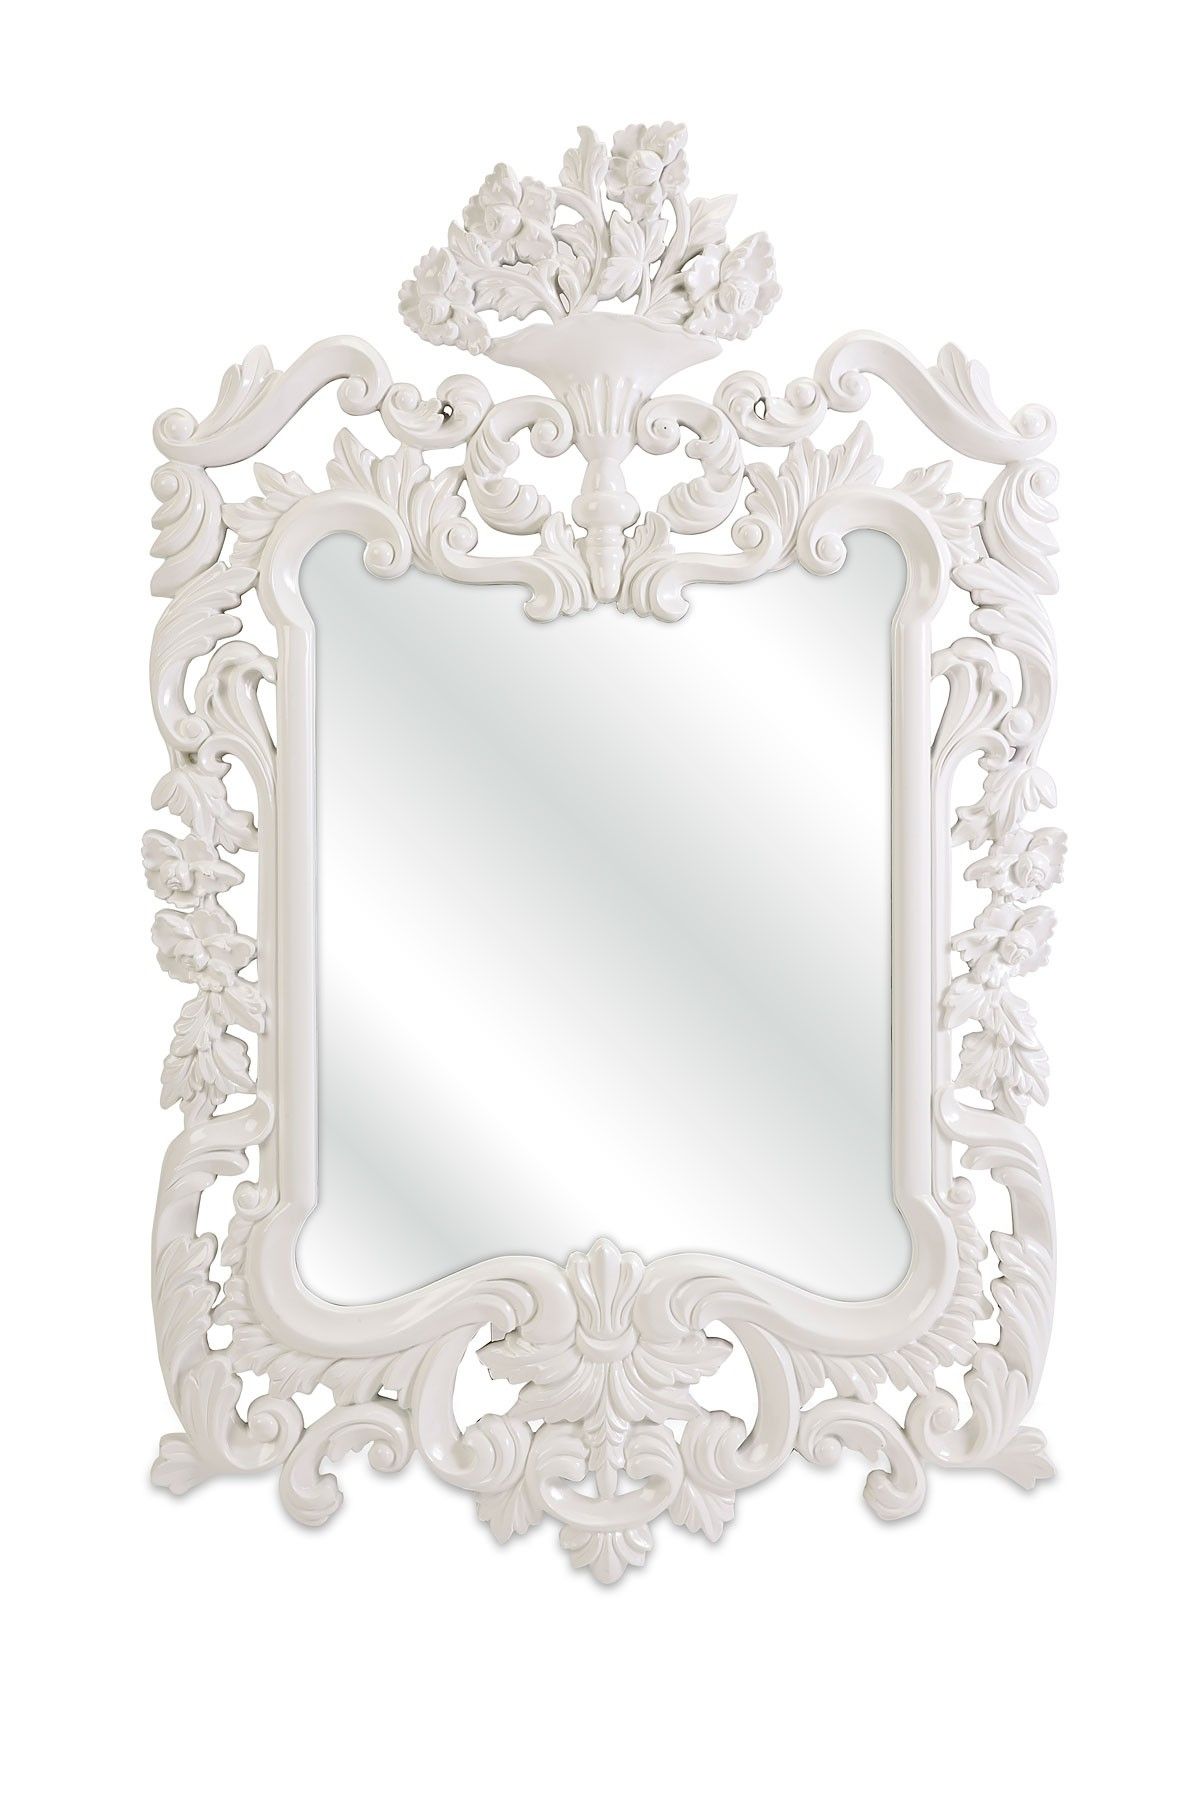 Baroque White Mirror House Pool Pinterest Barocco Intended For Baroque White Mirror (Photo 9 of 15)